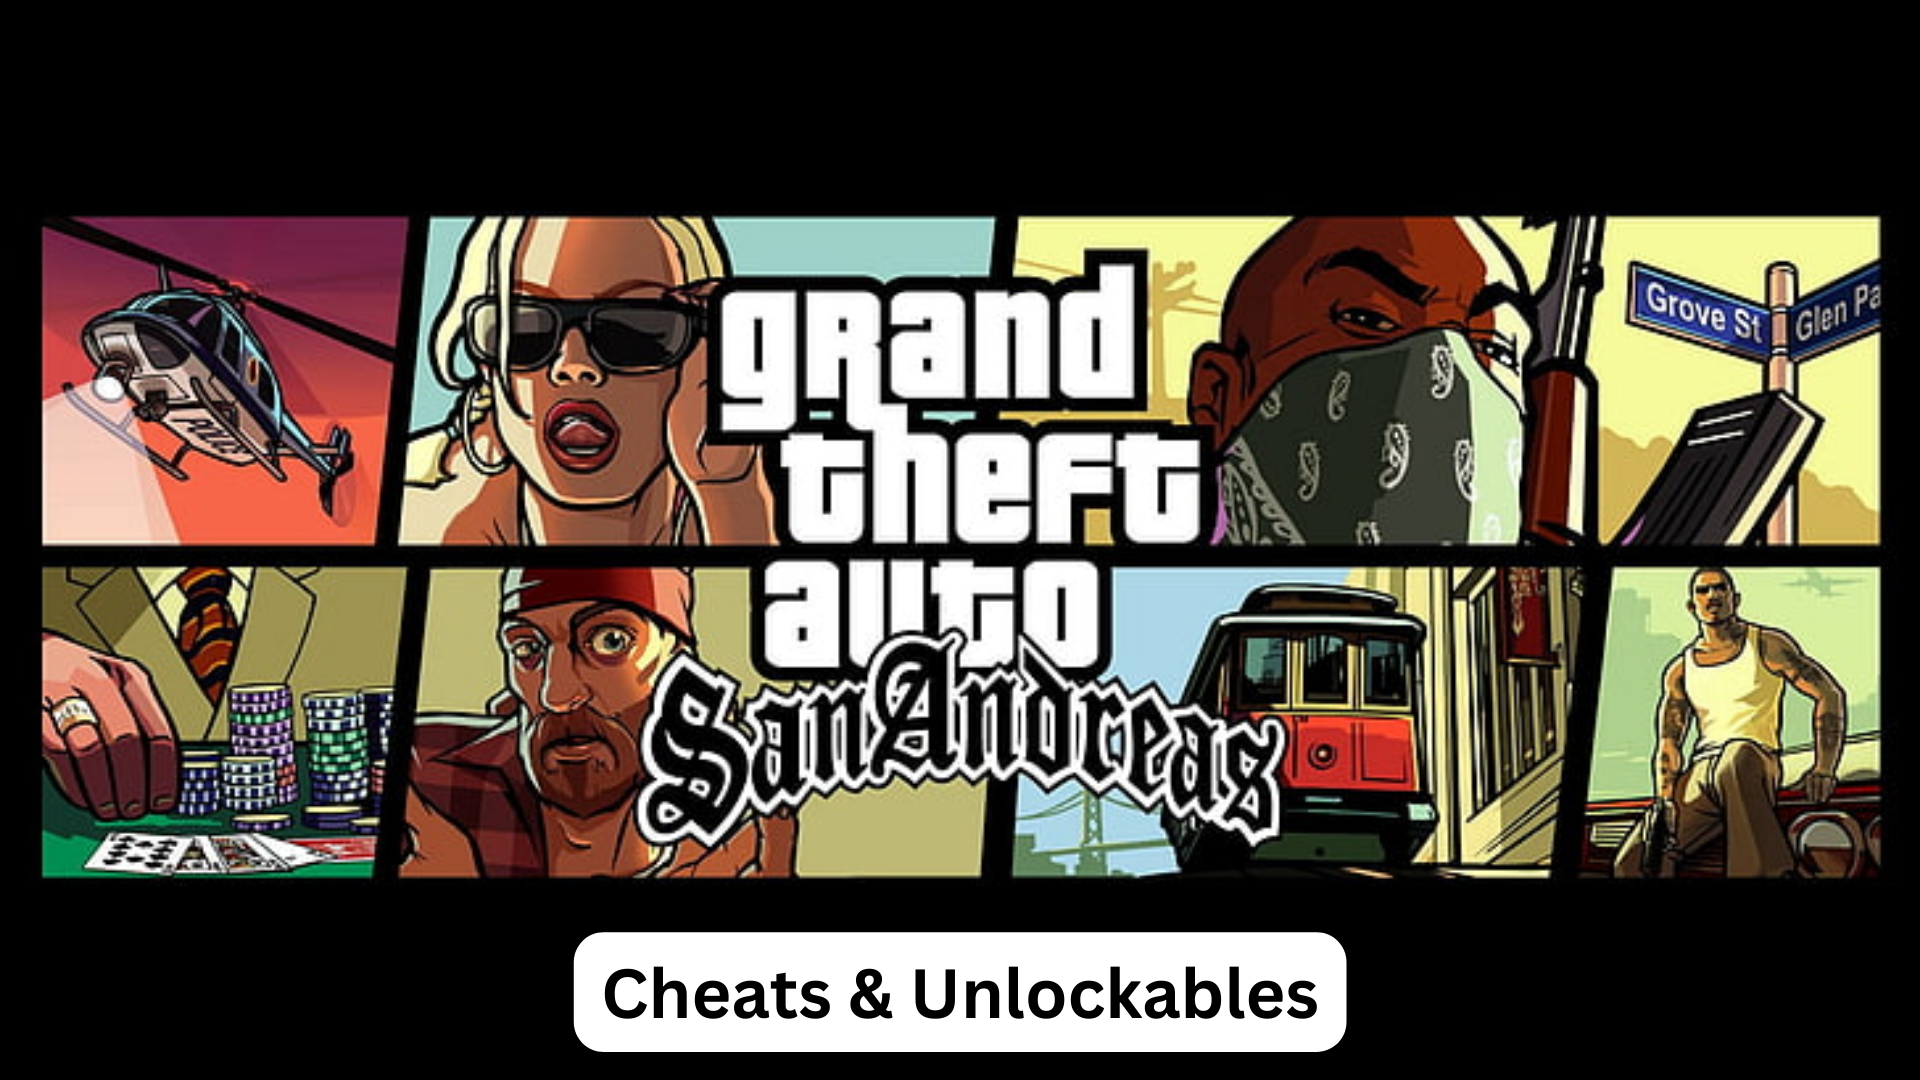 Grand Theft Auto: San Andreas Cheats & Unlockables